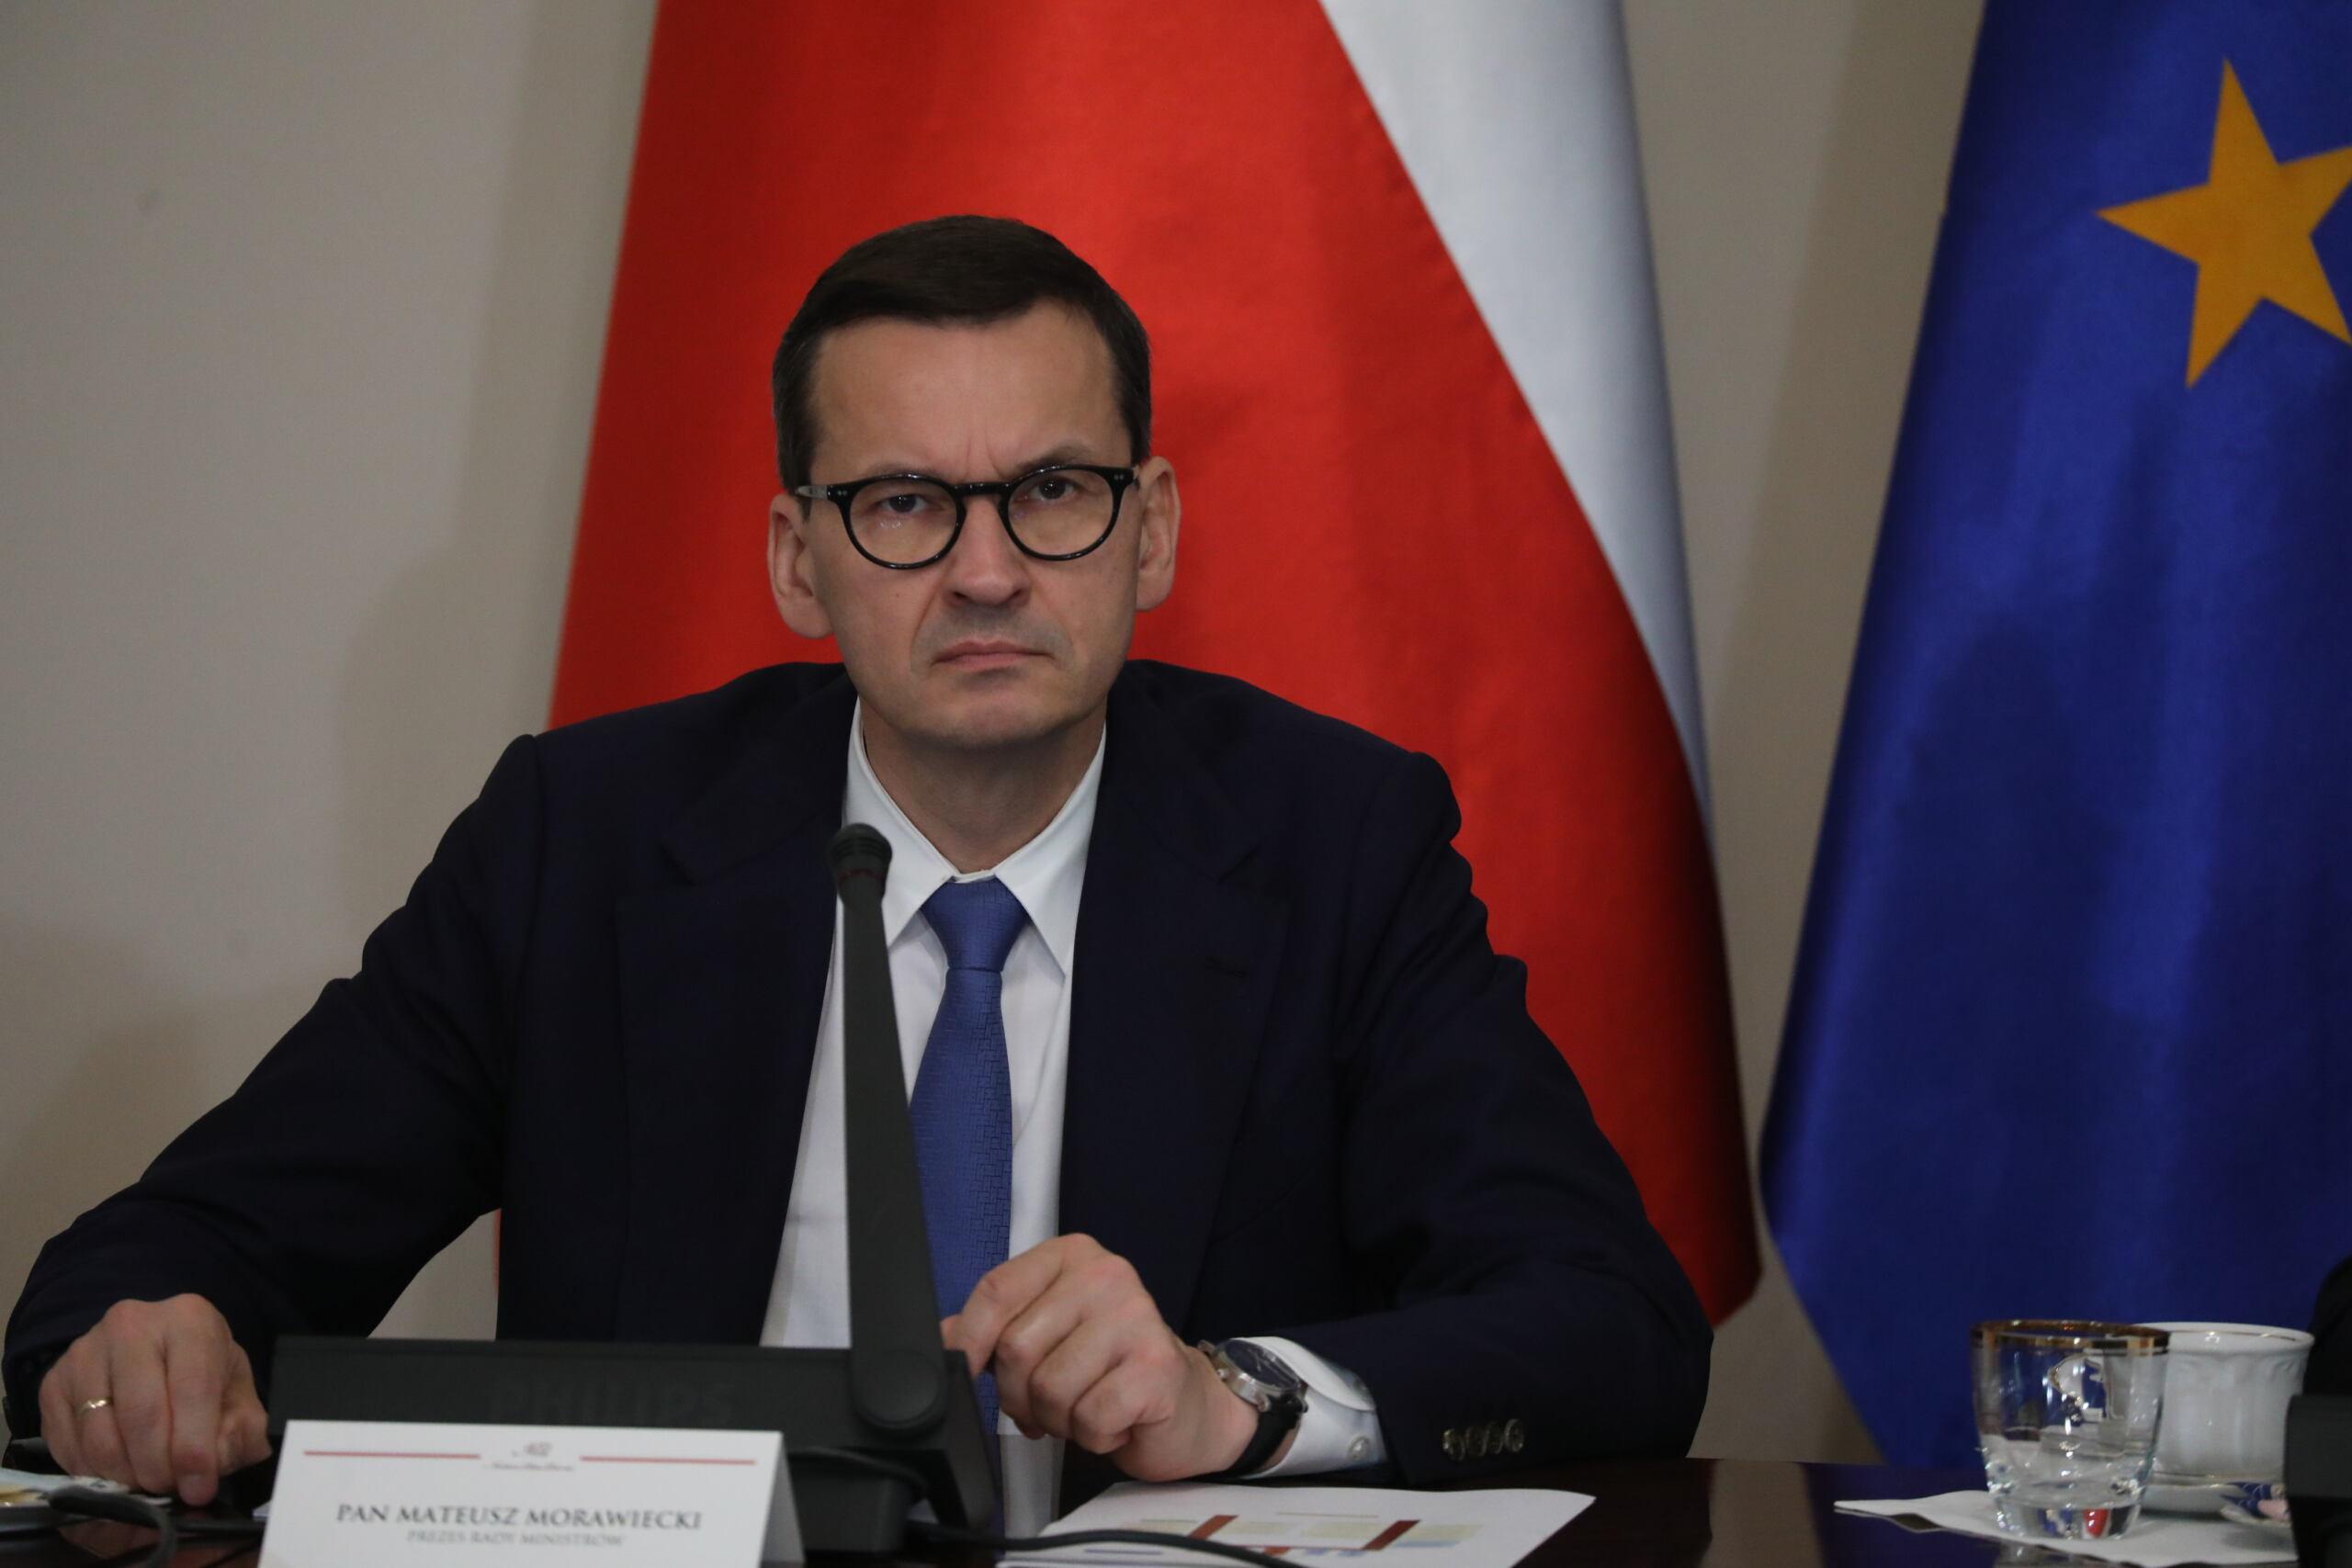 Premier Morawiecki z ponurą miną patrzy w obiektyw. Za nim flagi Polski i Unii Europejskiej